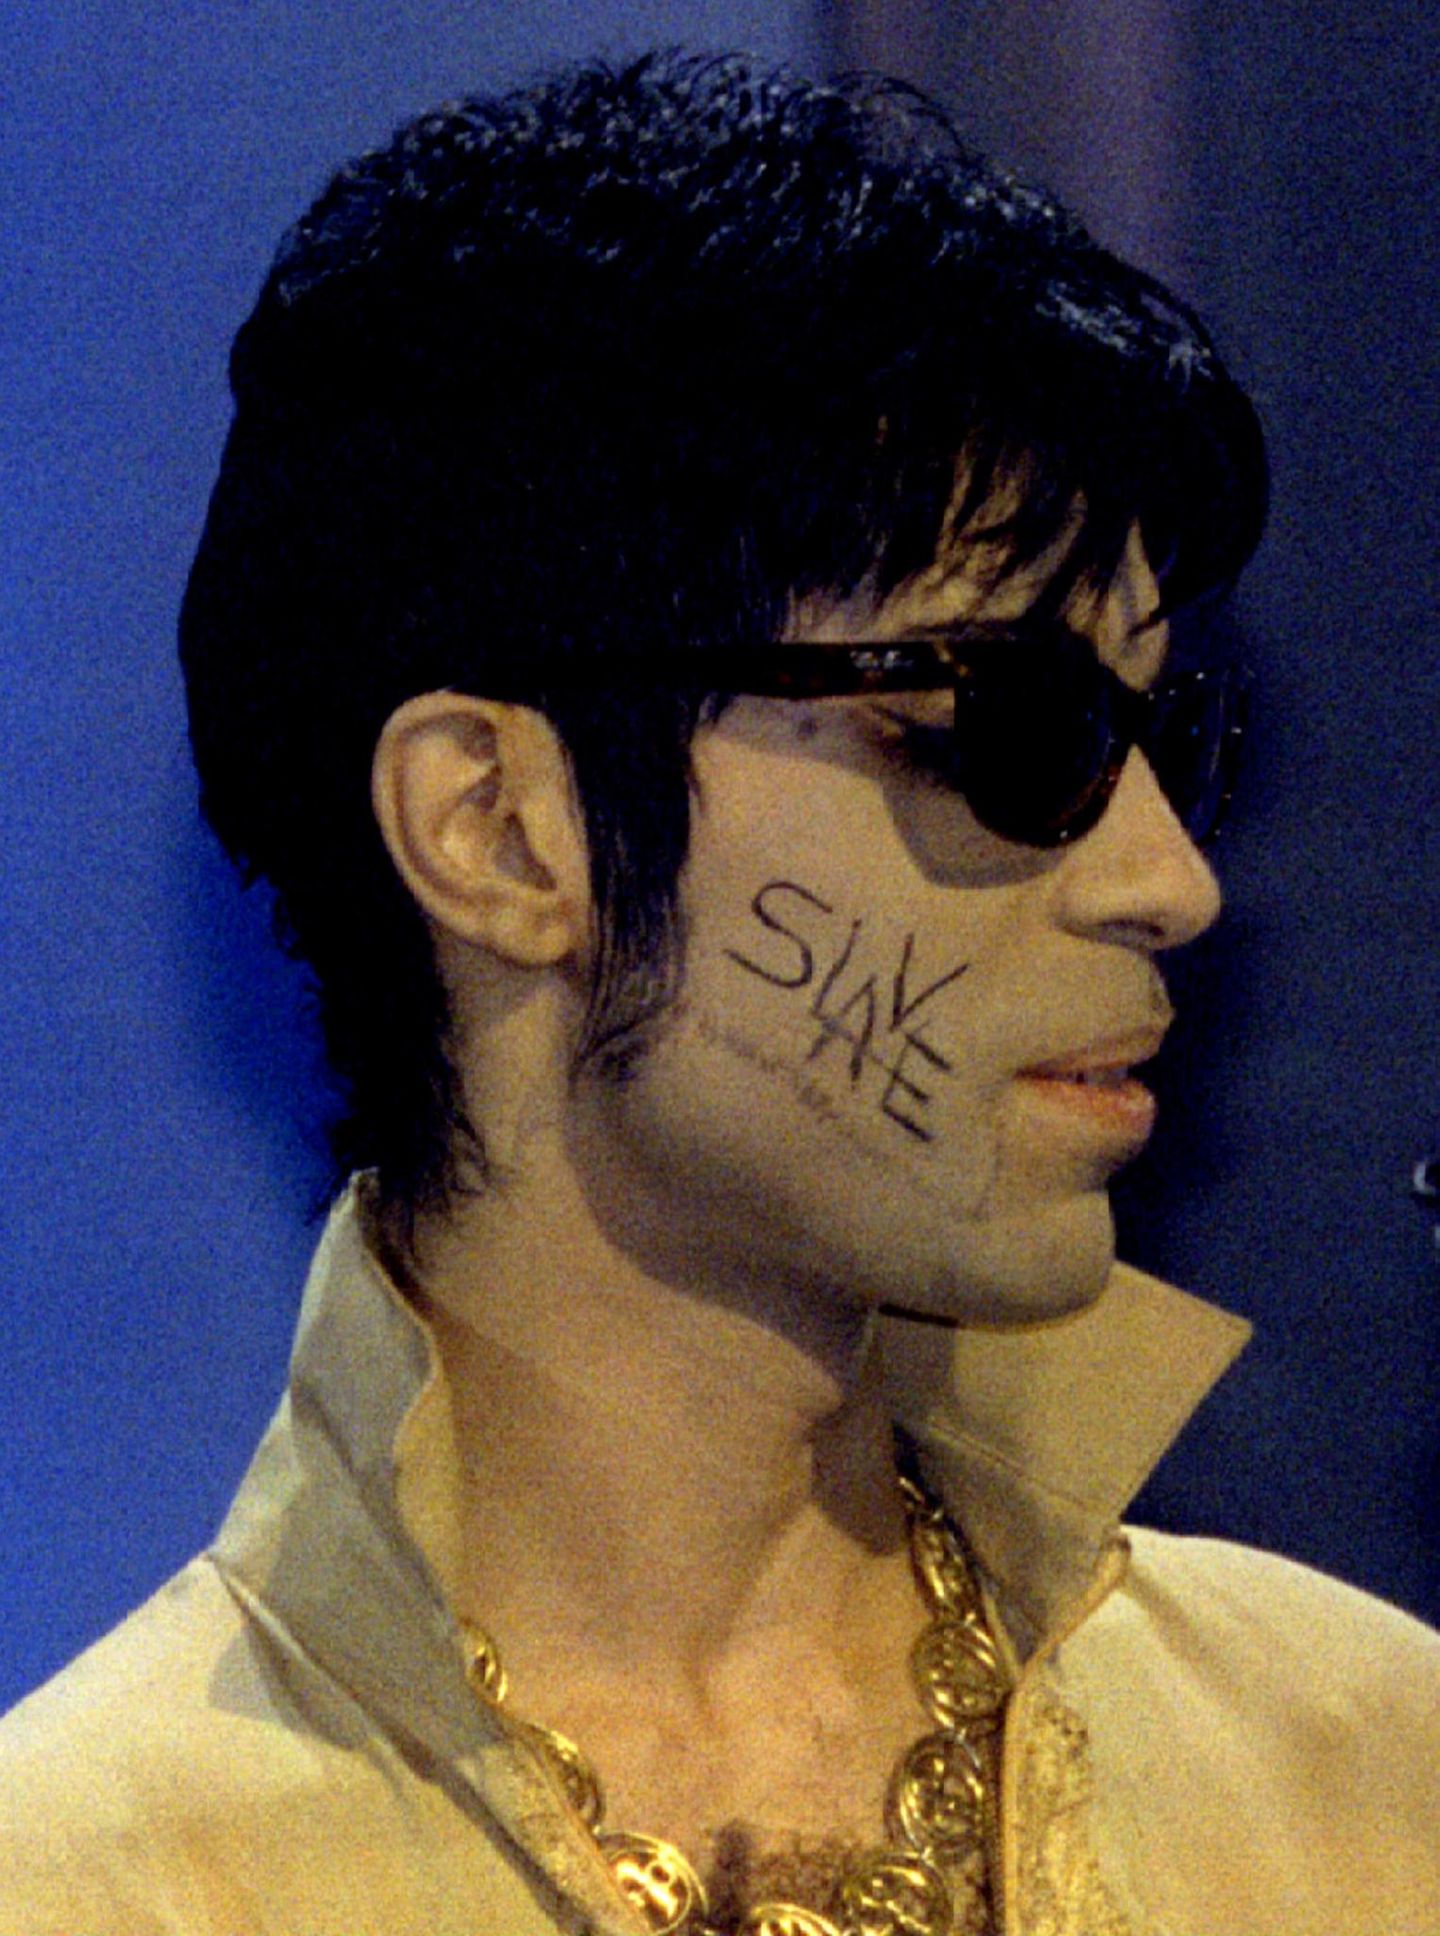 Anfang der Neunzigerjahre firmierte er nicht mehr als Prince. Statt eines Namens firmierte er nur noch unter einem Symbol oder auch als TAFKAP, The Artist Formerly Known As Prince. Nachdem er sich im Streit über die Verträge und Musikrechte von seinem Plattenlabel getrennt hatte, schrieb er sich aus Protest bei Auftritten das Wort "Slave" auf die Wange.